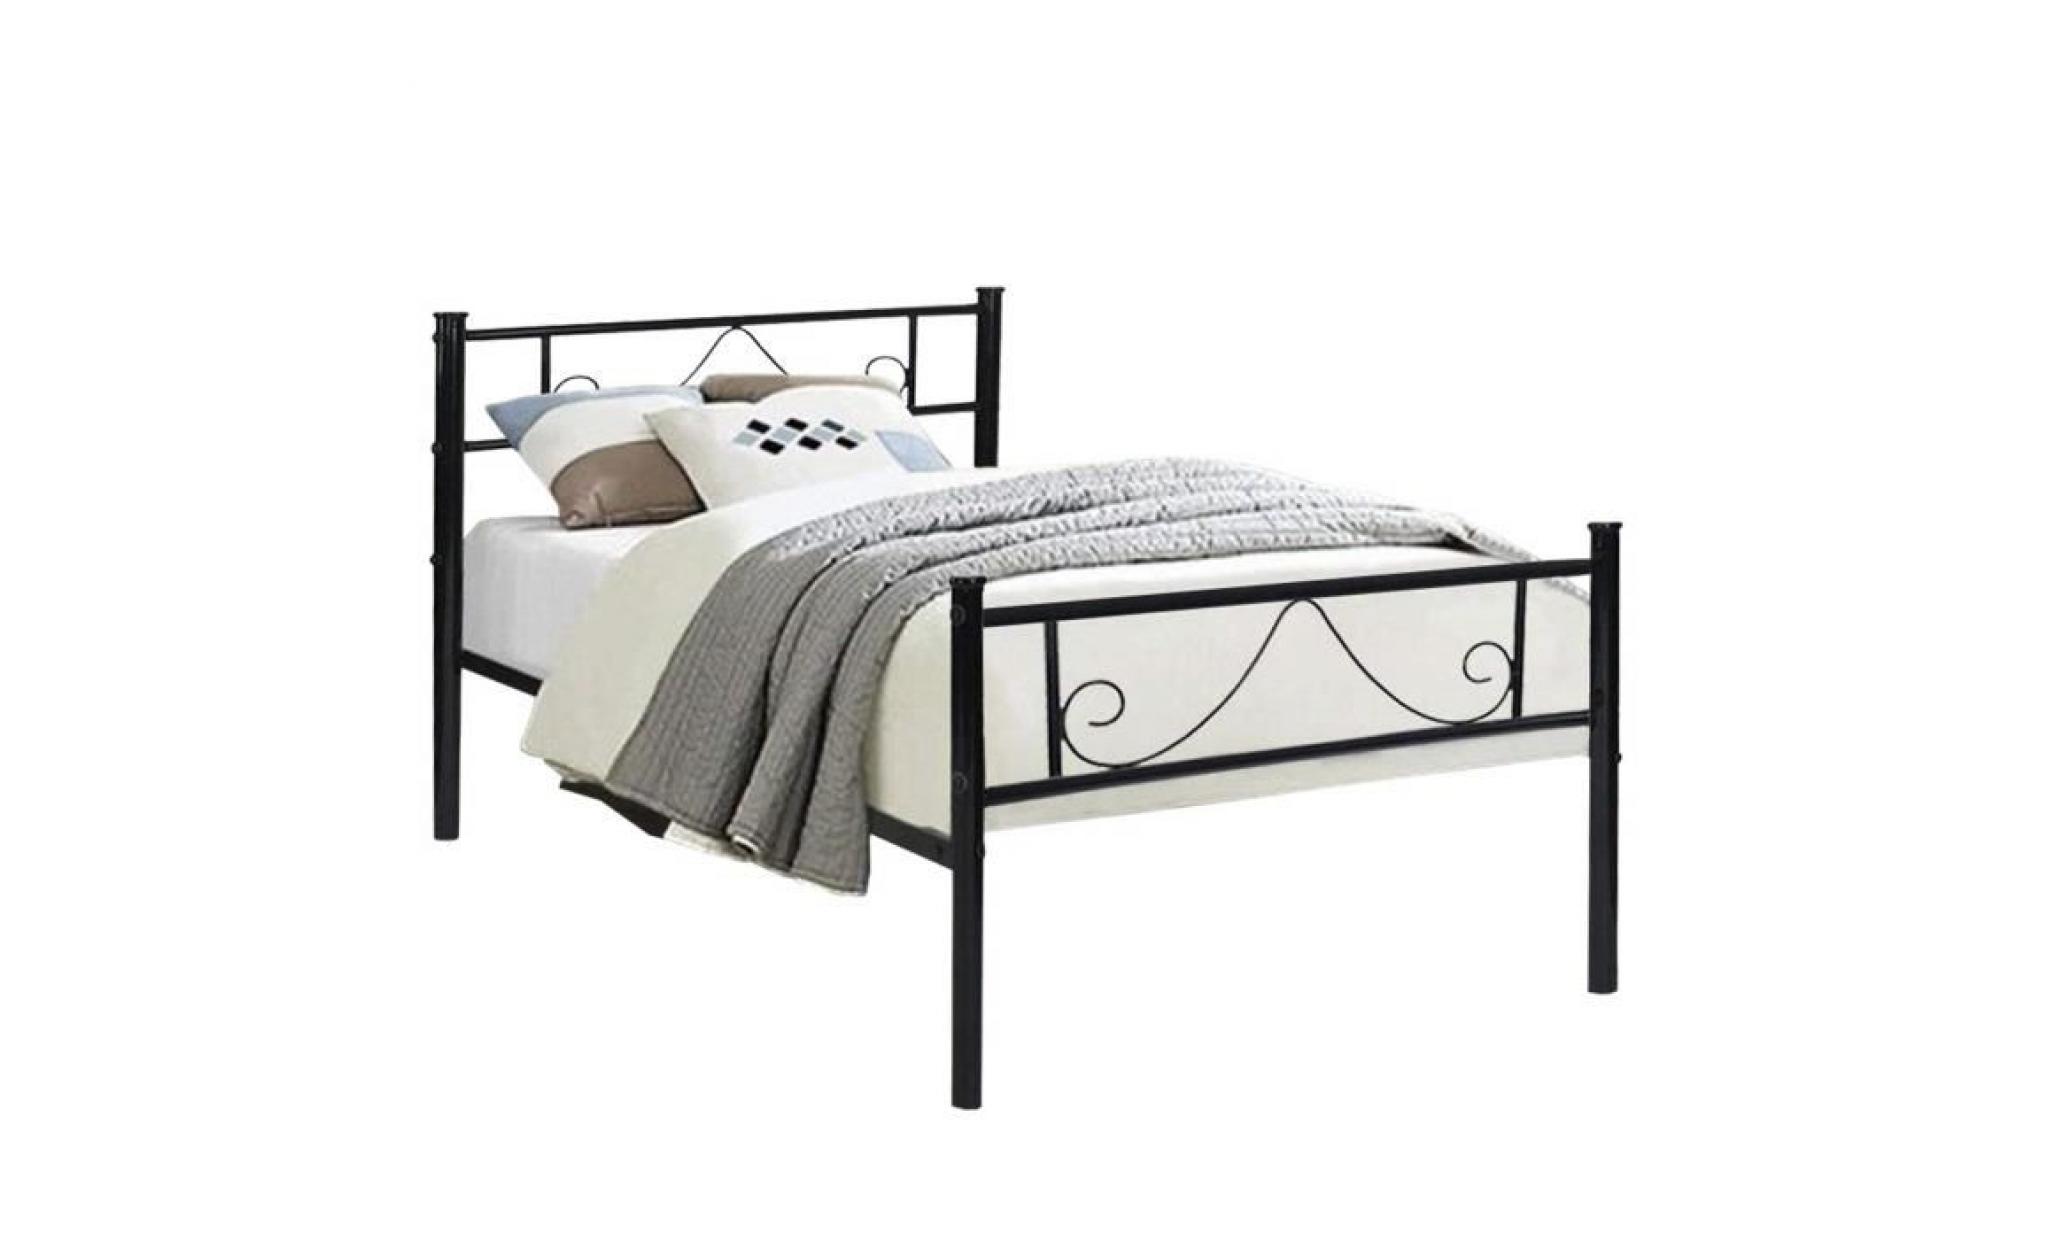 aingoo lit simple en métal design 1 place cadre de structure métallique comfort pour enfant 90x190cm, noir